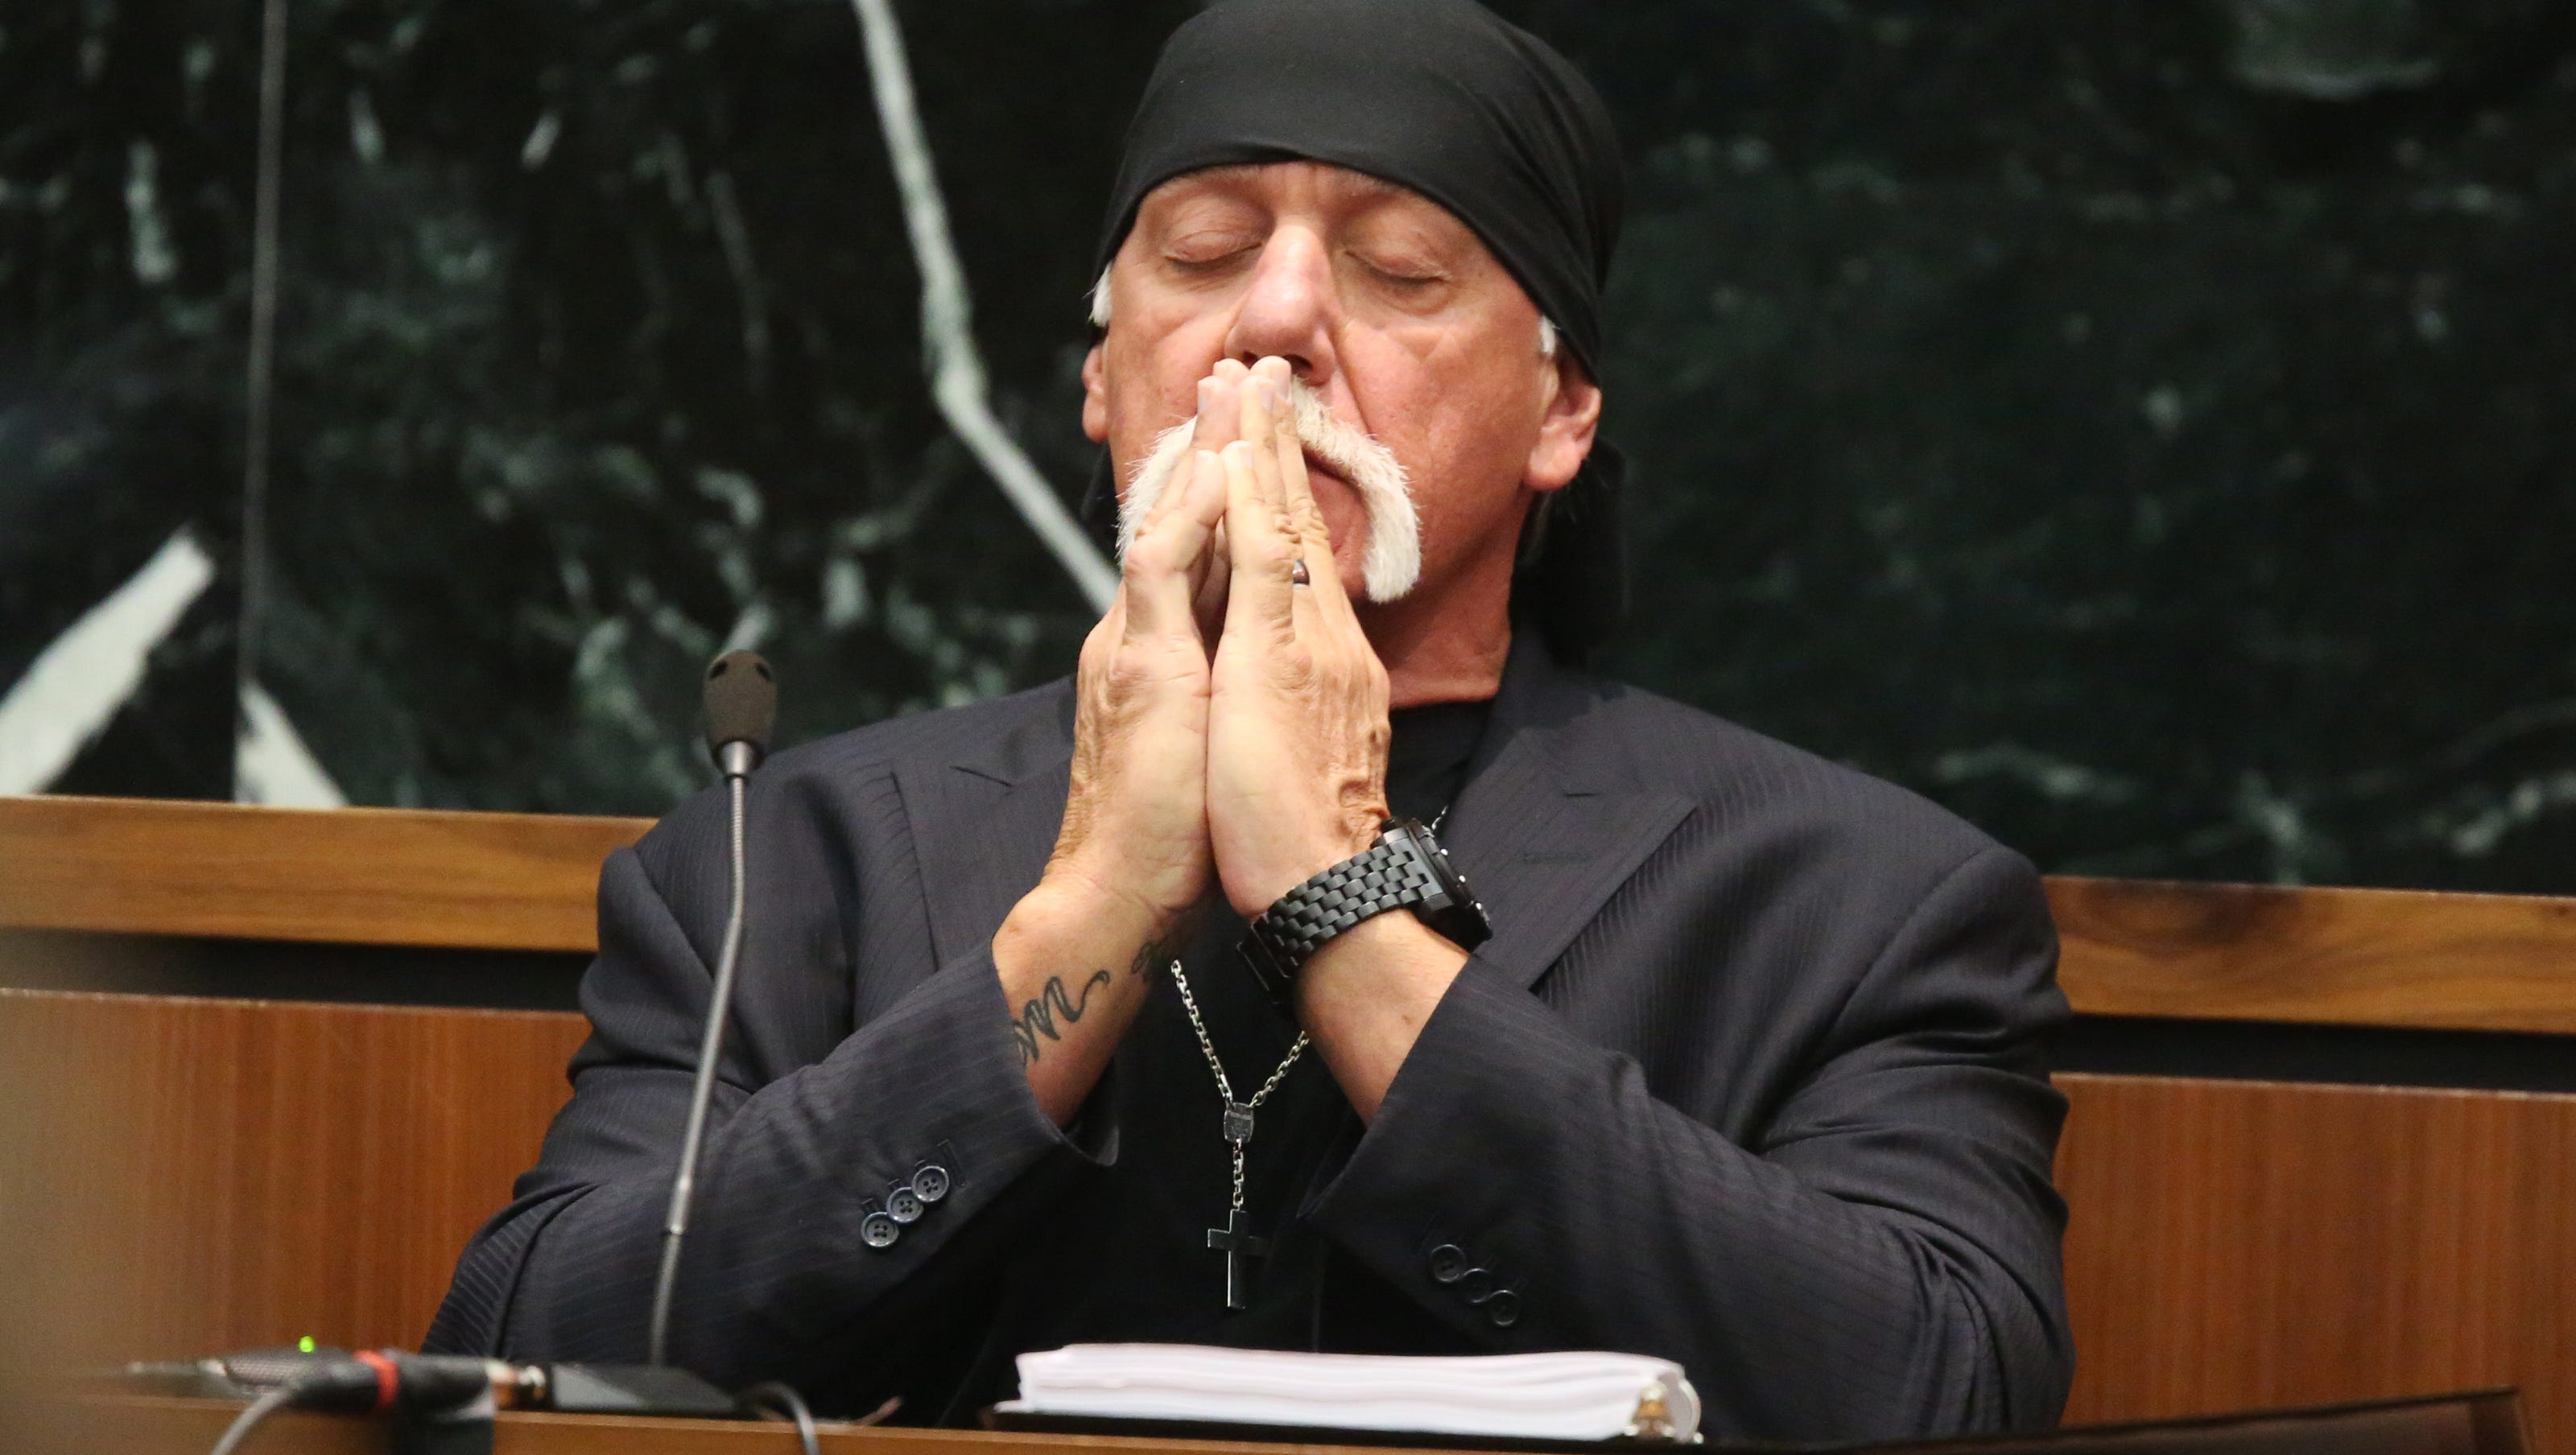 Will Hulk Hogan S Sex Tape Award Kill Gawker